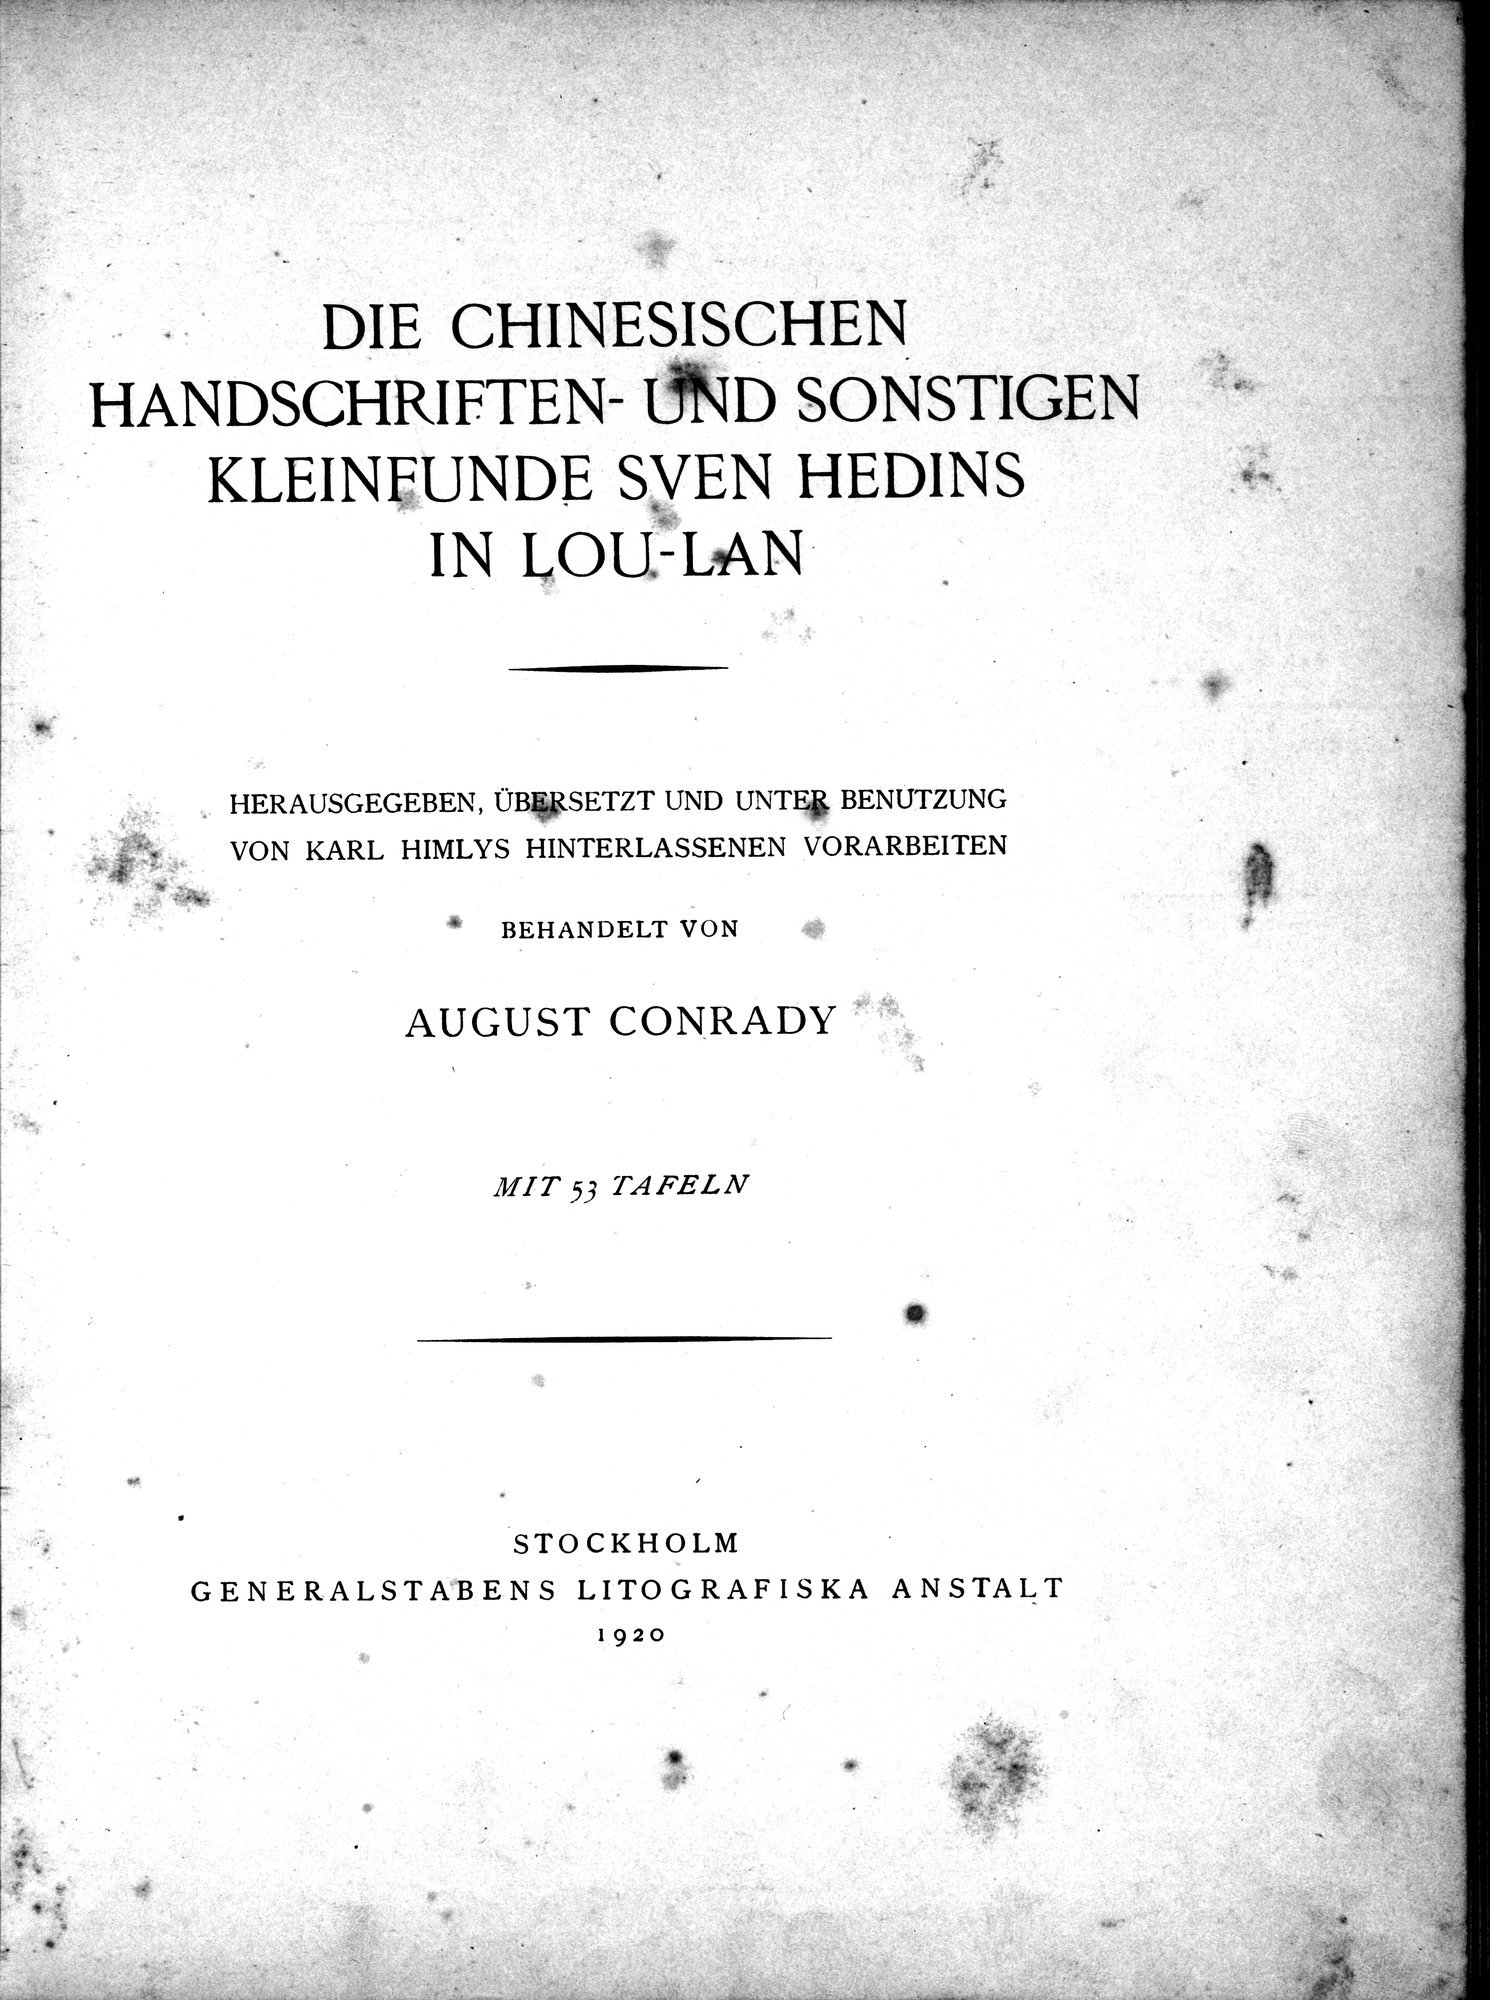 Die Chinesischen Handschriften- und sonstigen Kleinfunde Sven Hedins in Lou-lan : vol.1 / Page 13 (Grayscale High Resolution Image)